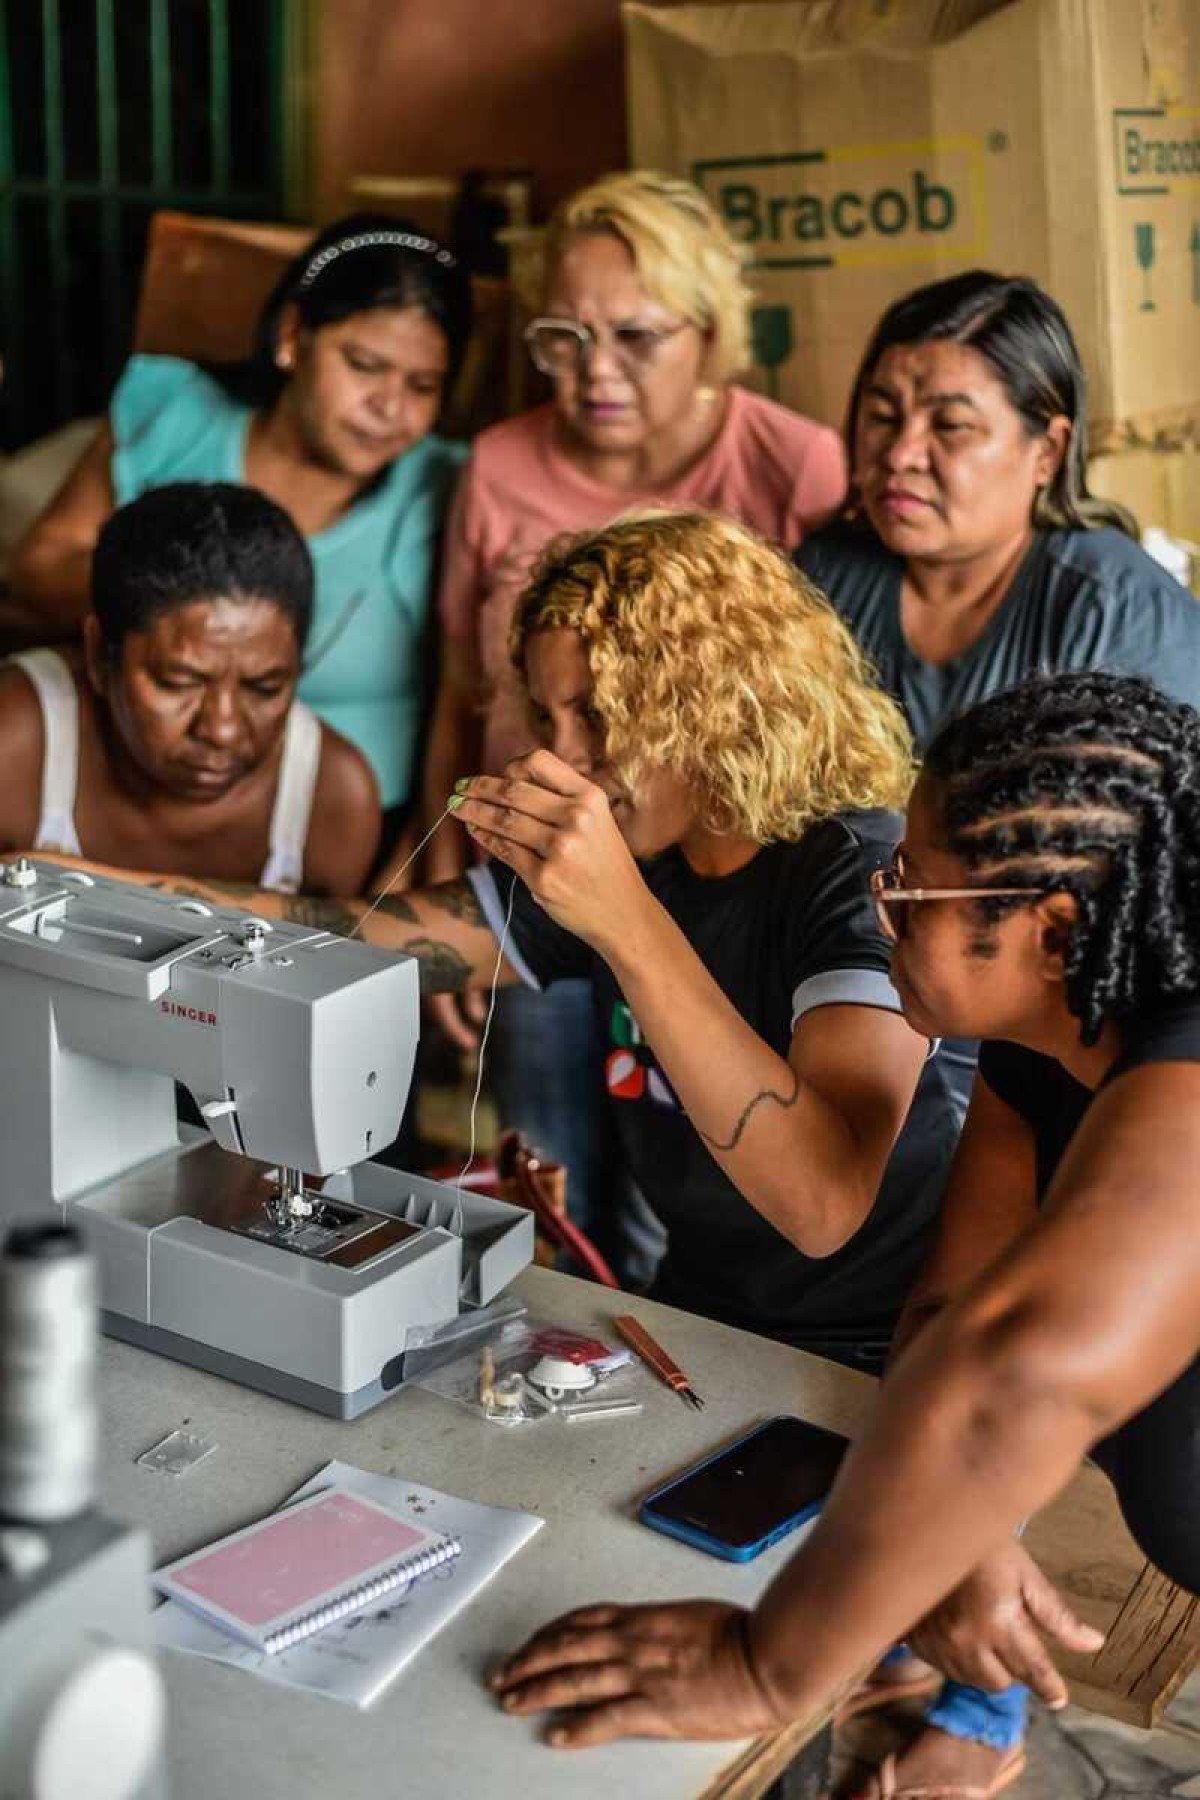 Projeto Flores do Cerrado oferece cursos gratuitos de capacitação para mulheres em situação de vulnerabilidade no Recanto das Emas